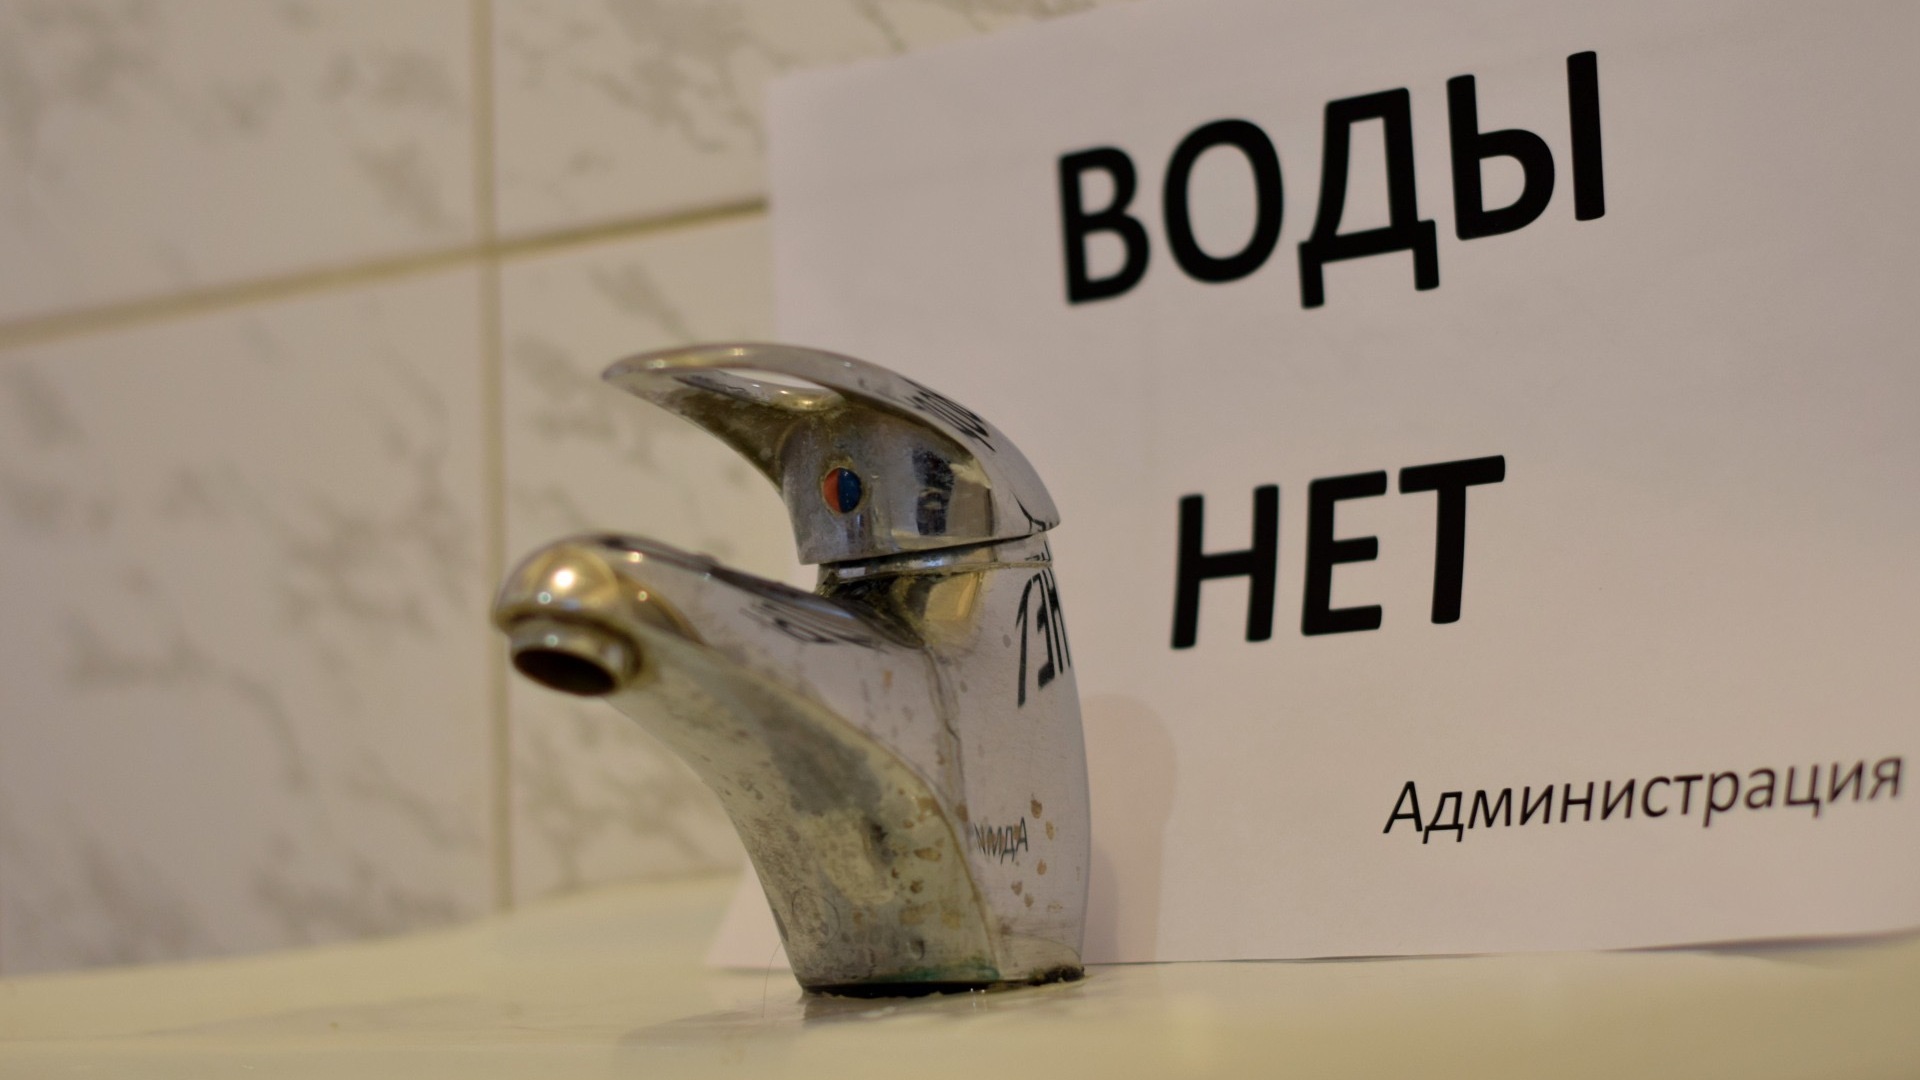 Больше месяца прошло: сидеть без горячей воды продолжают жители челябинского района